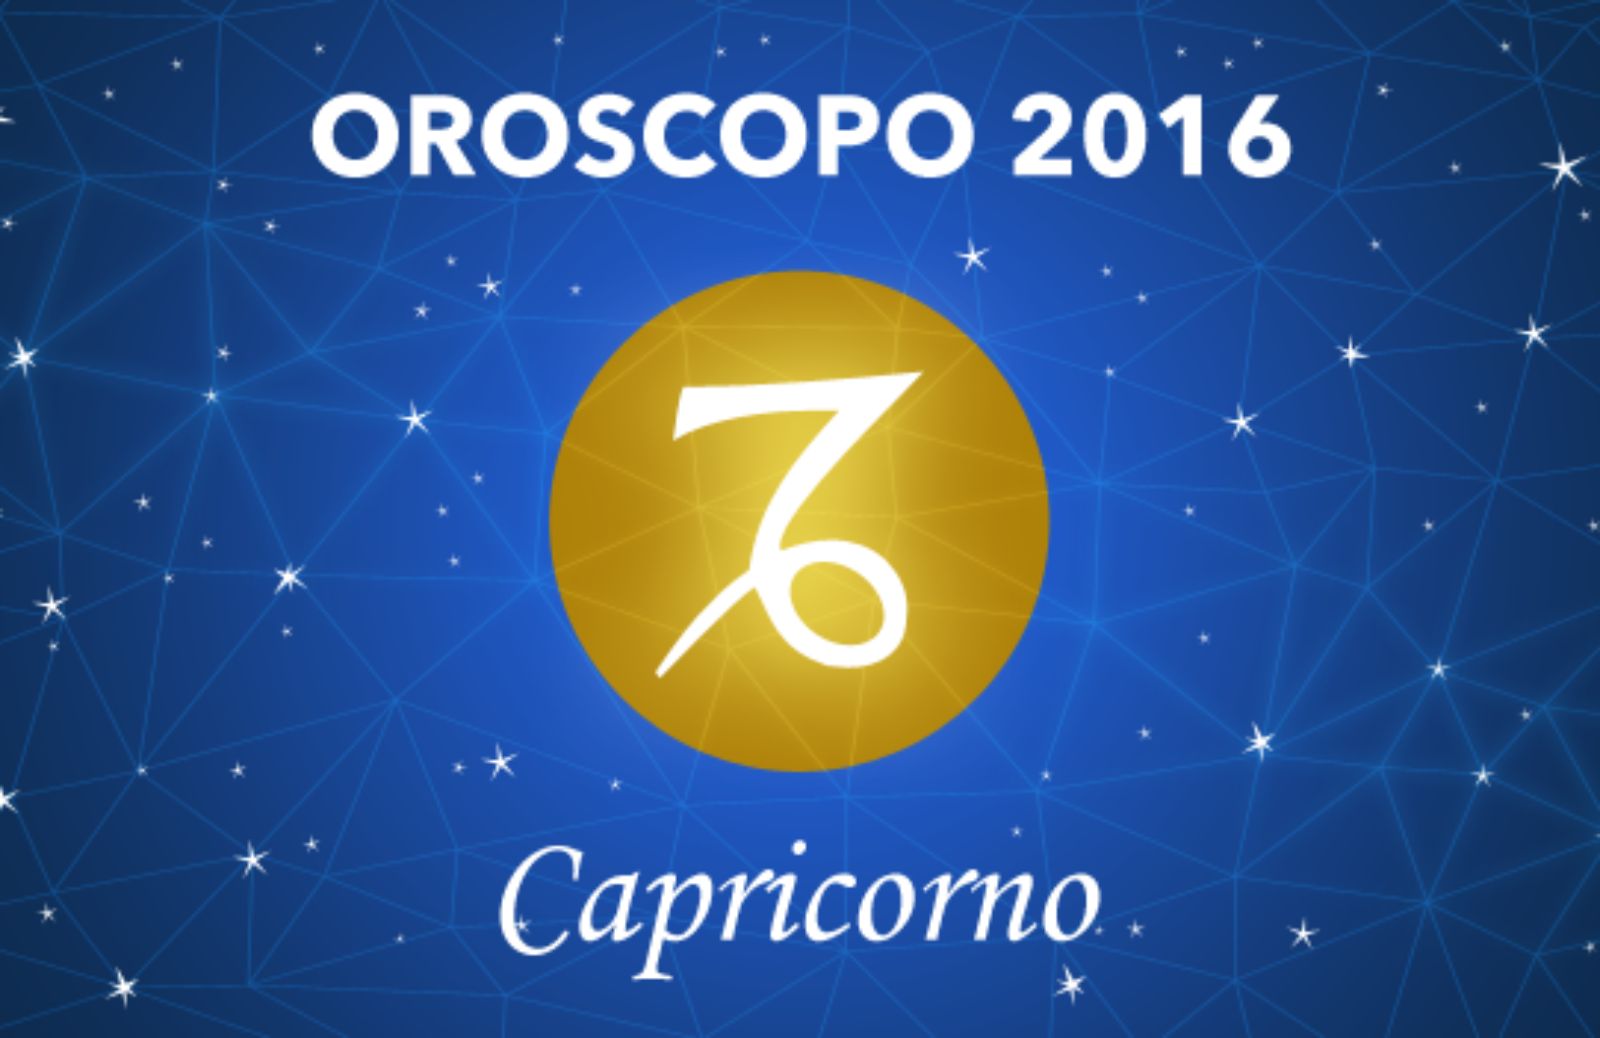 Oroscopo 2016 - Capricorno